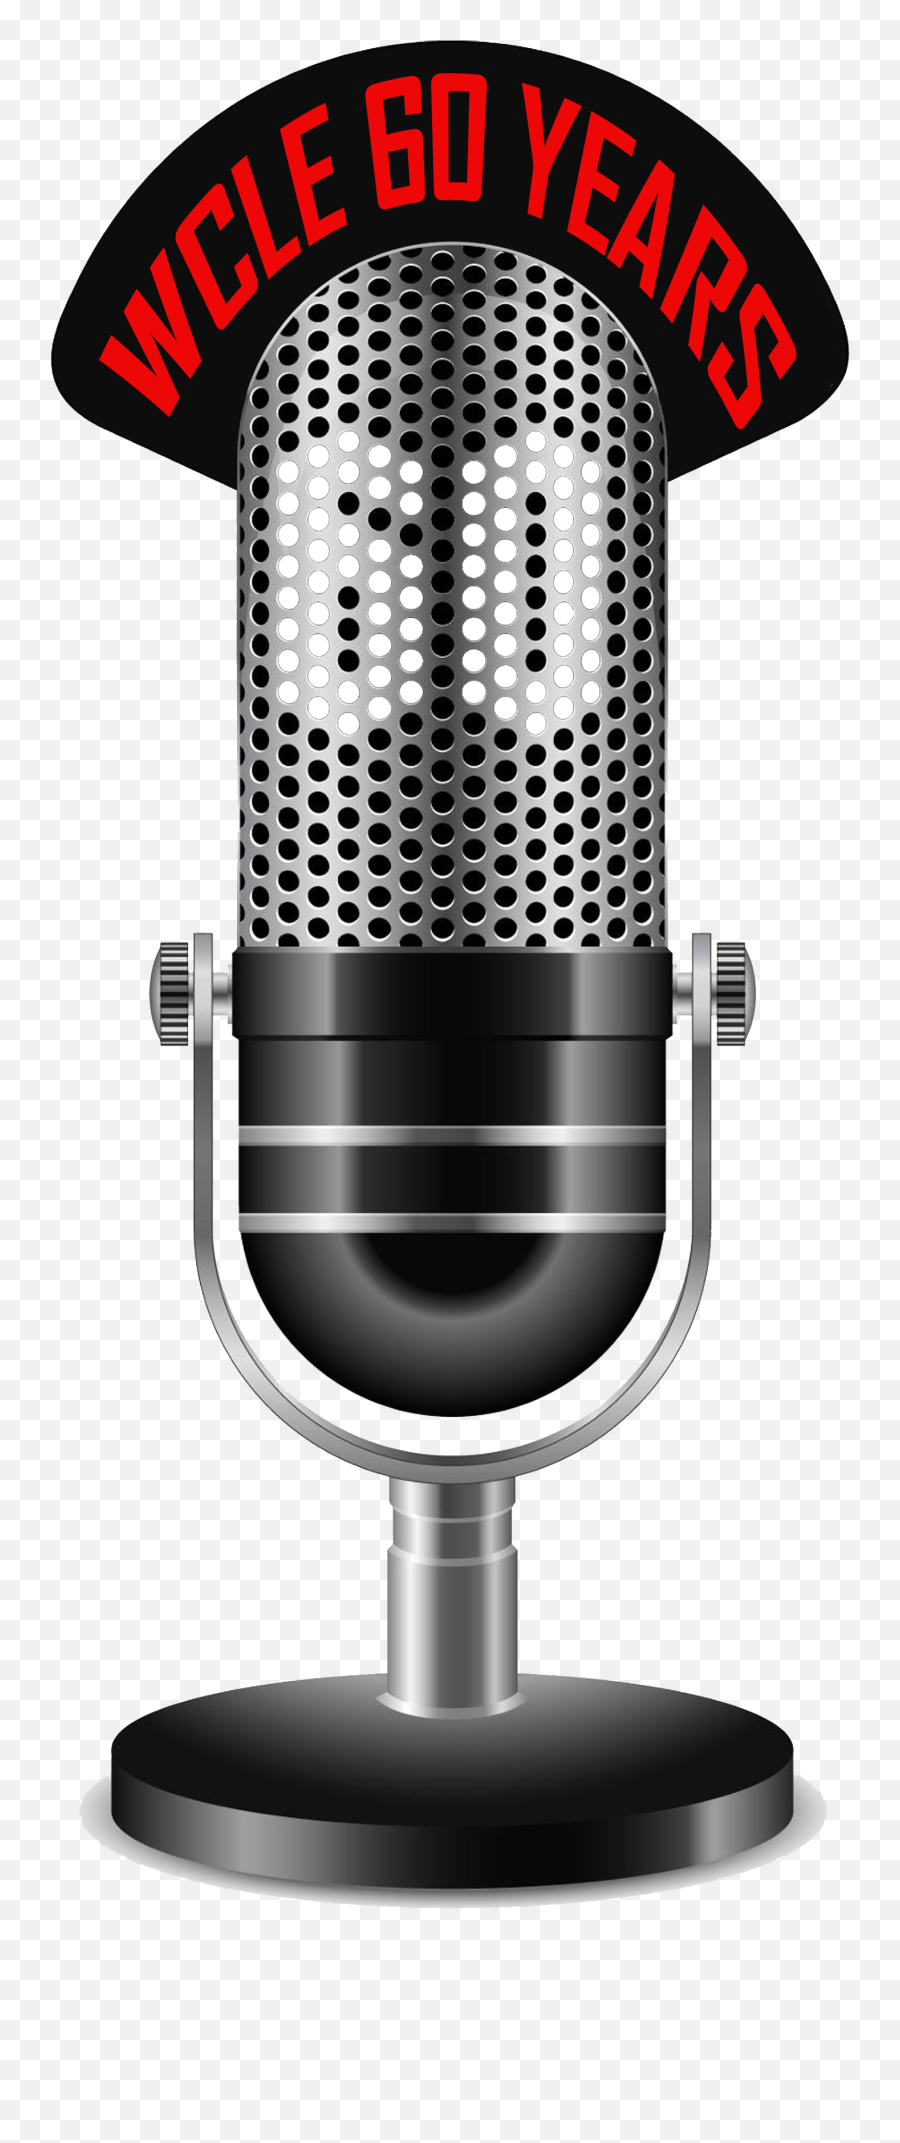 Download Wcle 60 Logo2 - Transparent Background Microphone Transparent Background Radio Microphone Clipart Emoji,Microphone Emoji Transparent